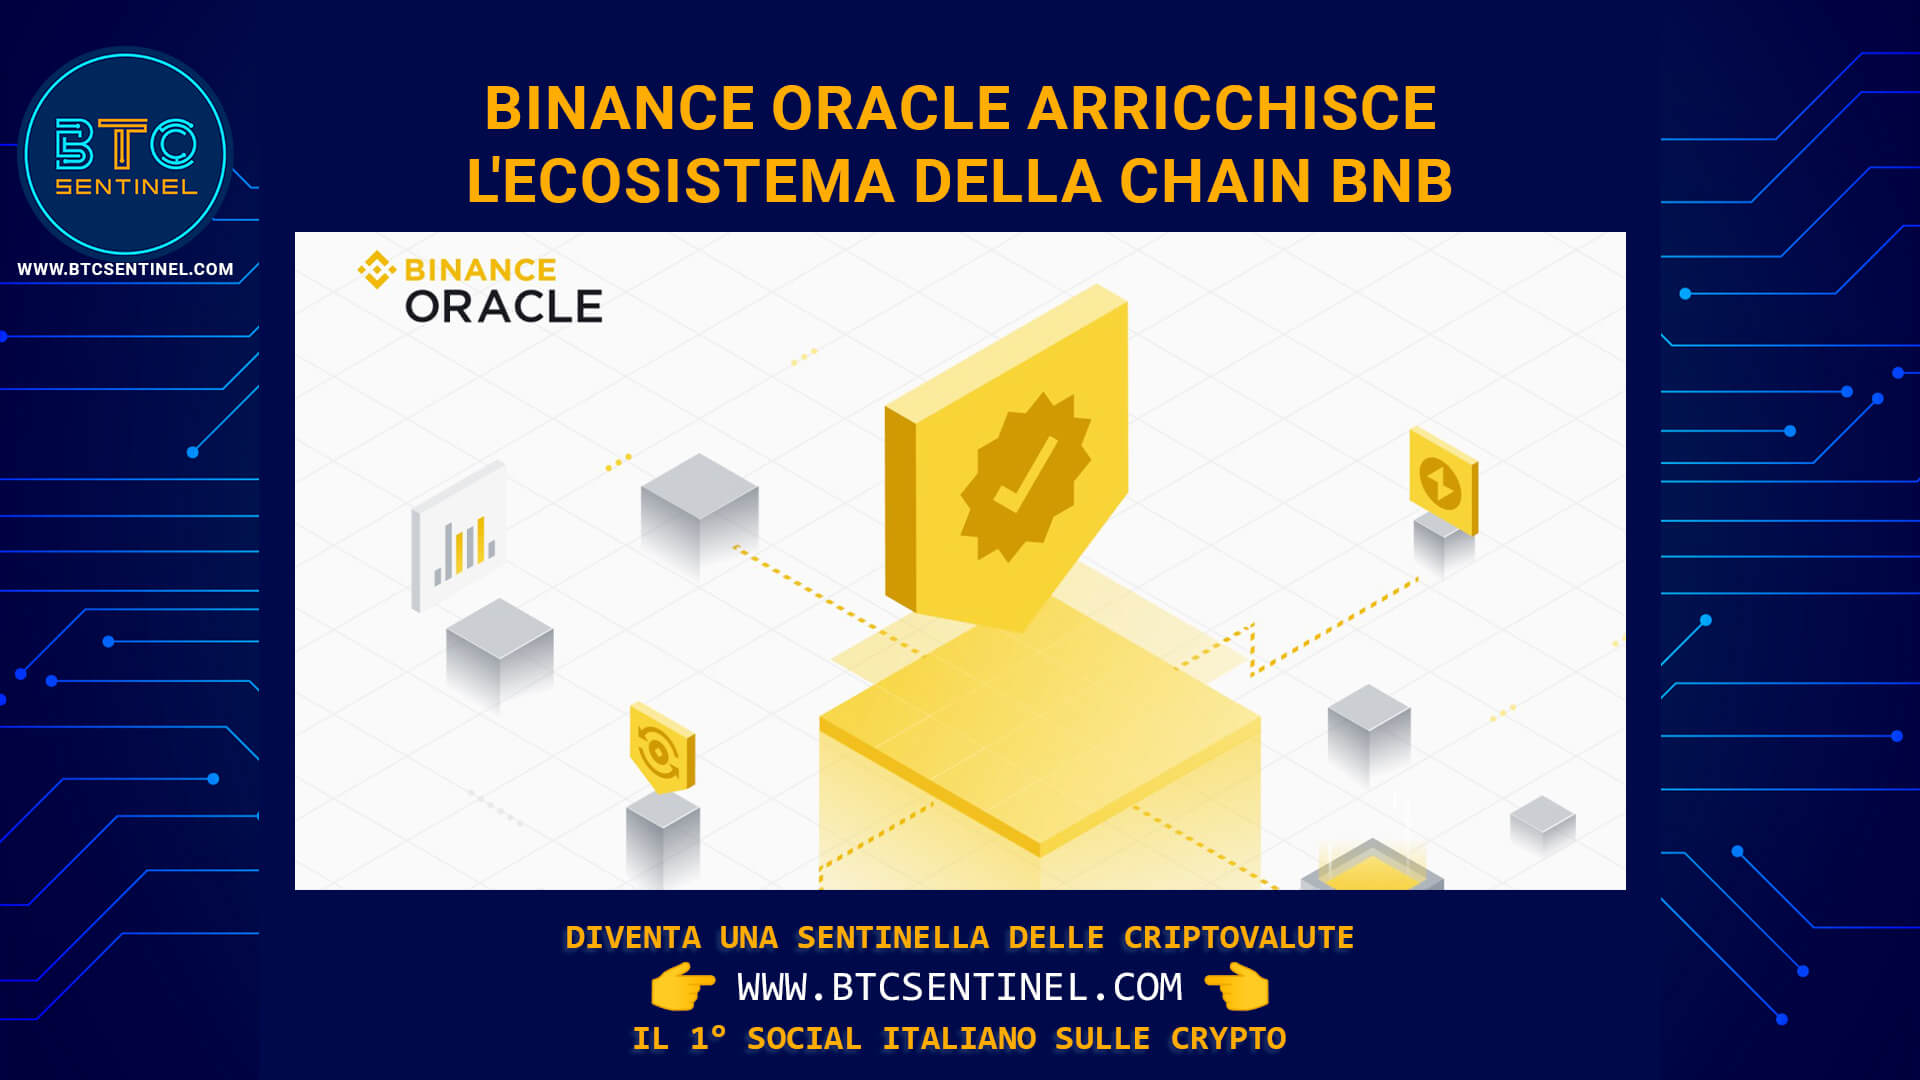 L'exchange Binance lancia Binance Oracle per arricchire l'ecosistema della blockchain BNB